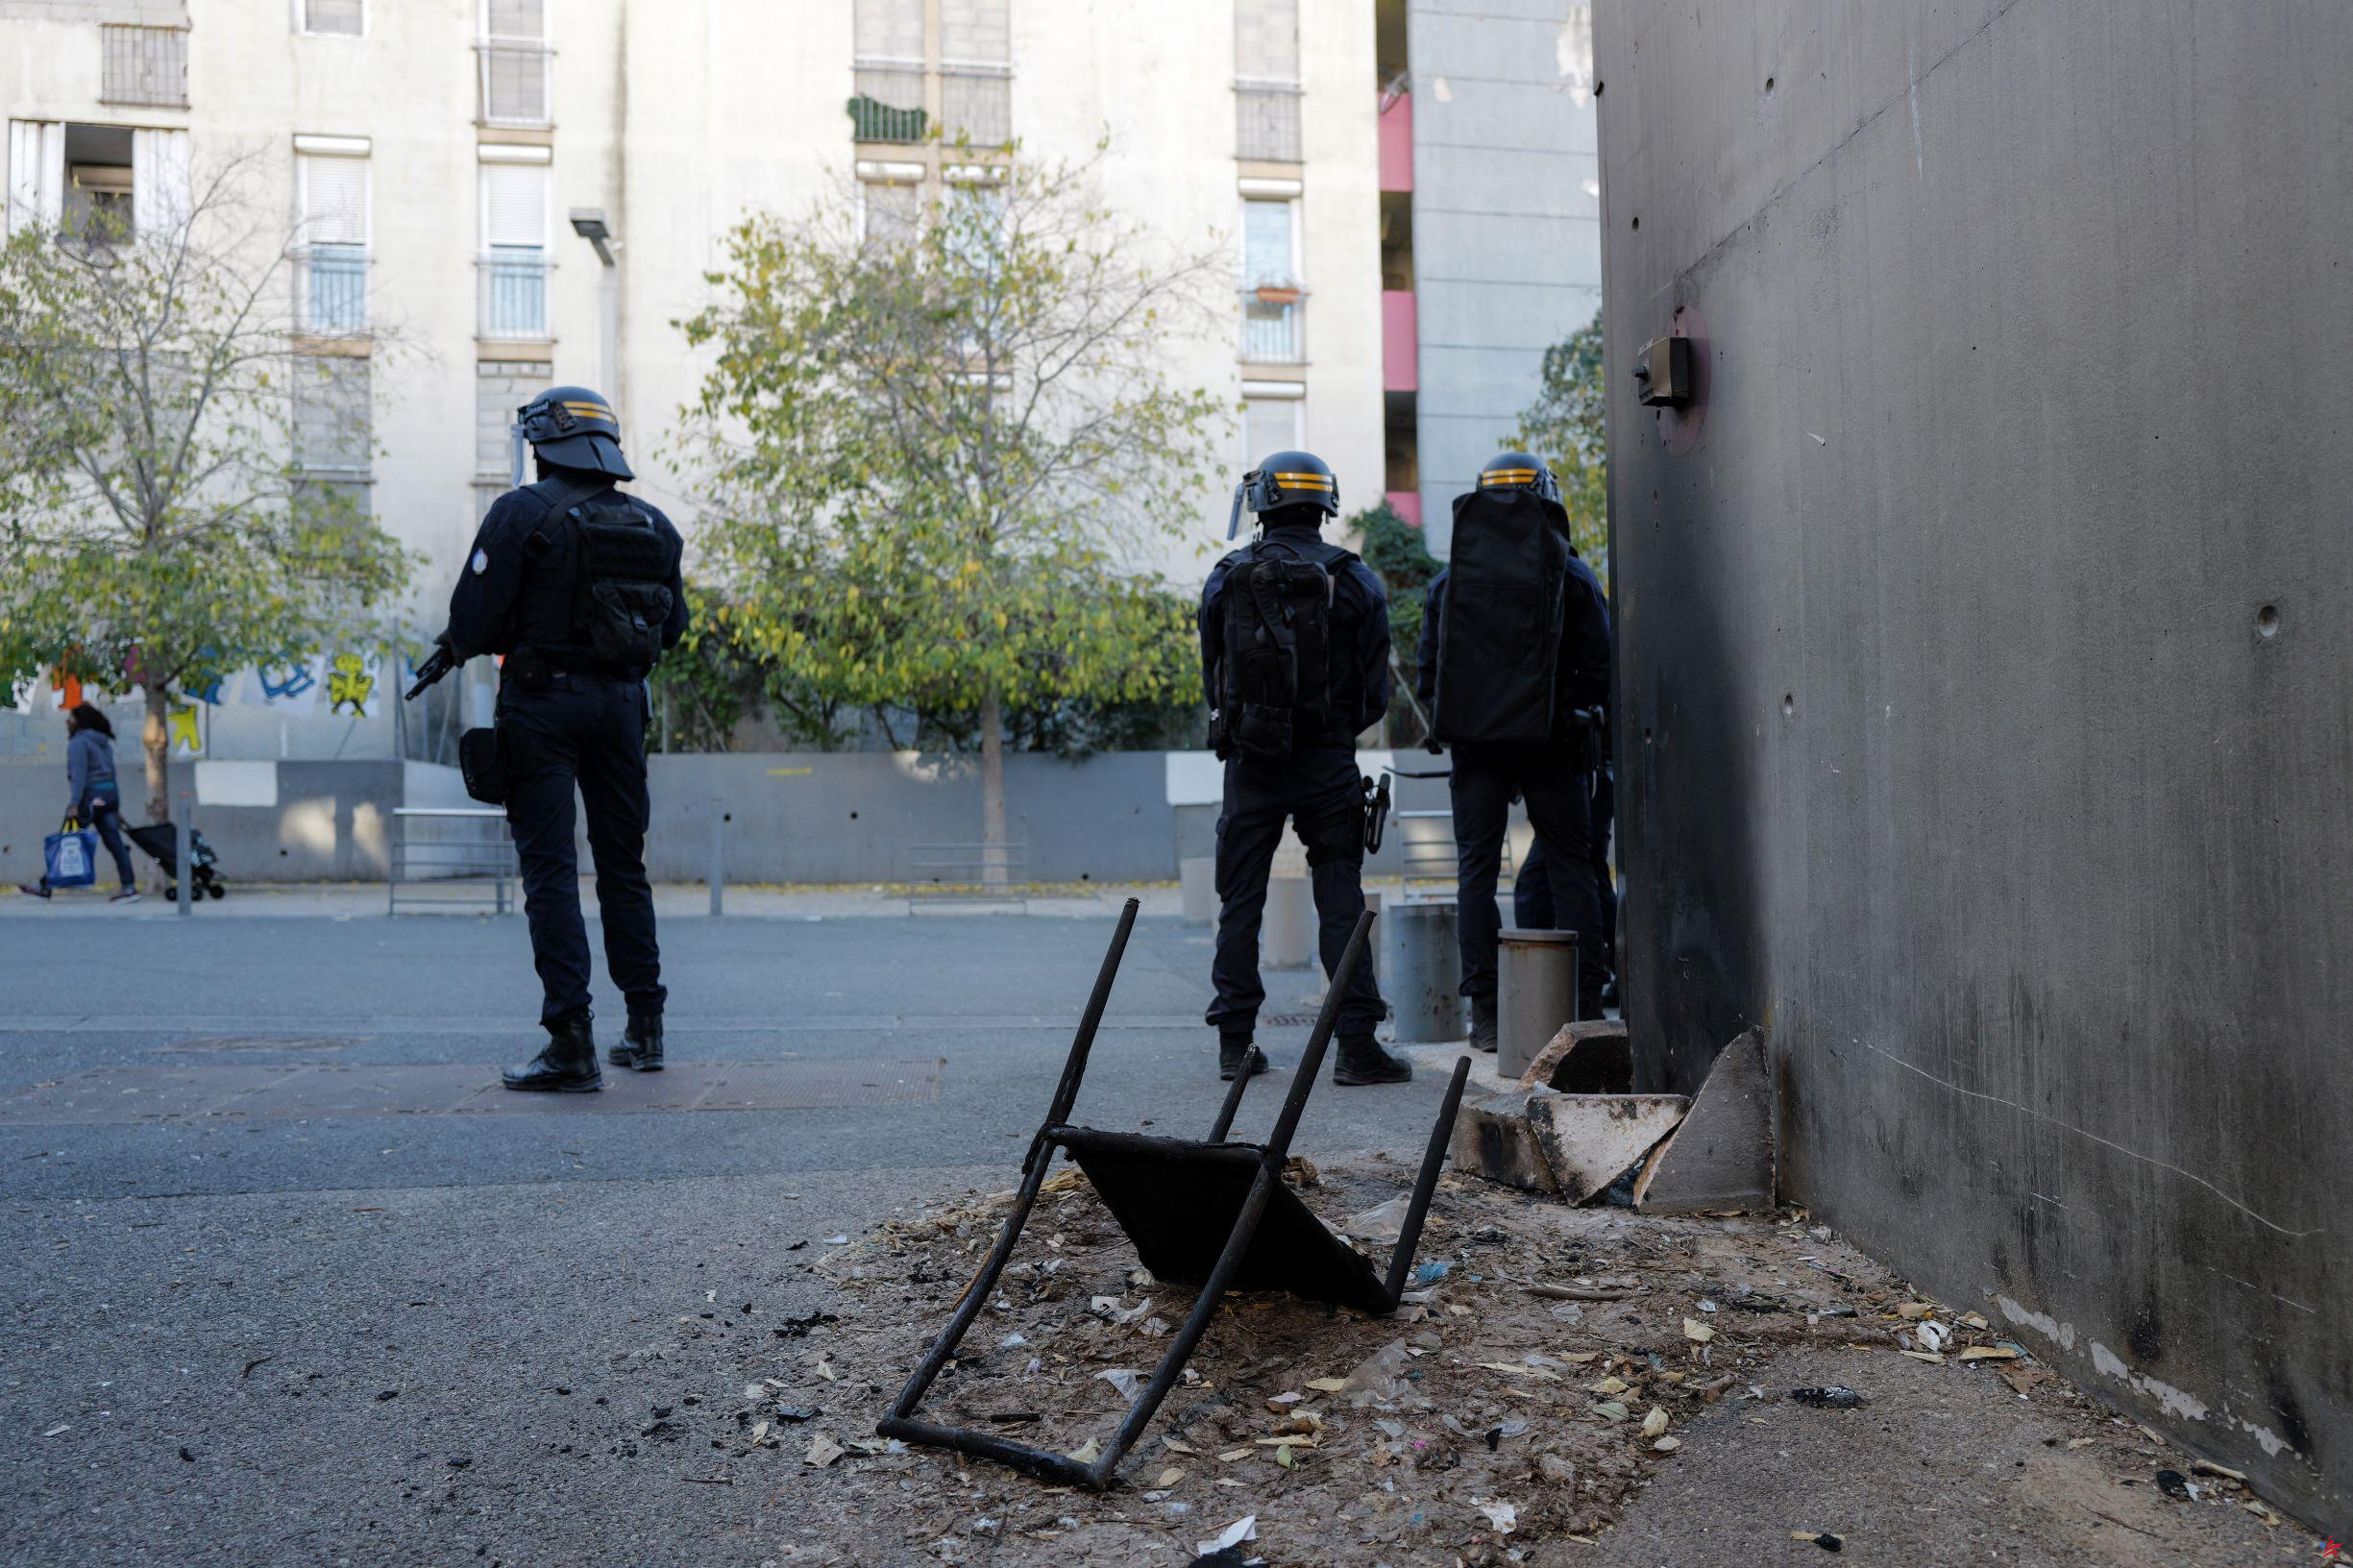 “La revuelta de los residentes contra los inmigrantes”: en el barrio Moulins de Niza, una semana de fuertes tensiones